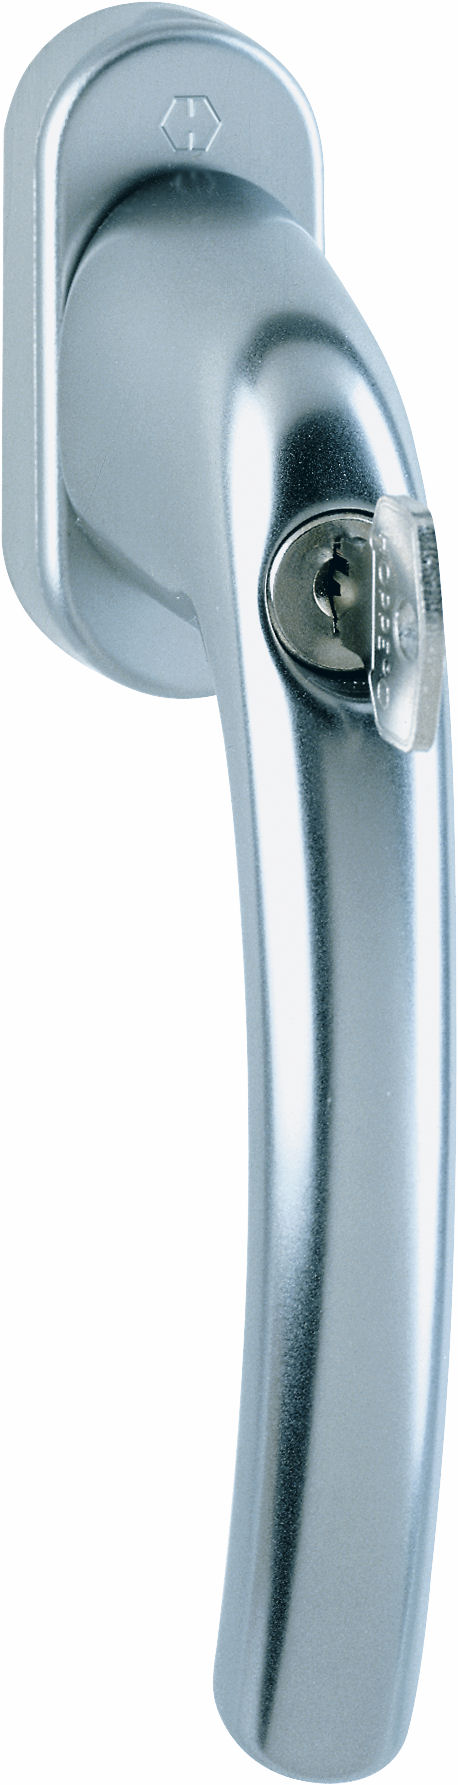 Martellina dk con chiave HOPPE modello TOKYO per serramento con rosetta con quadro 35 in alluminio titanio